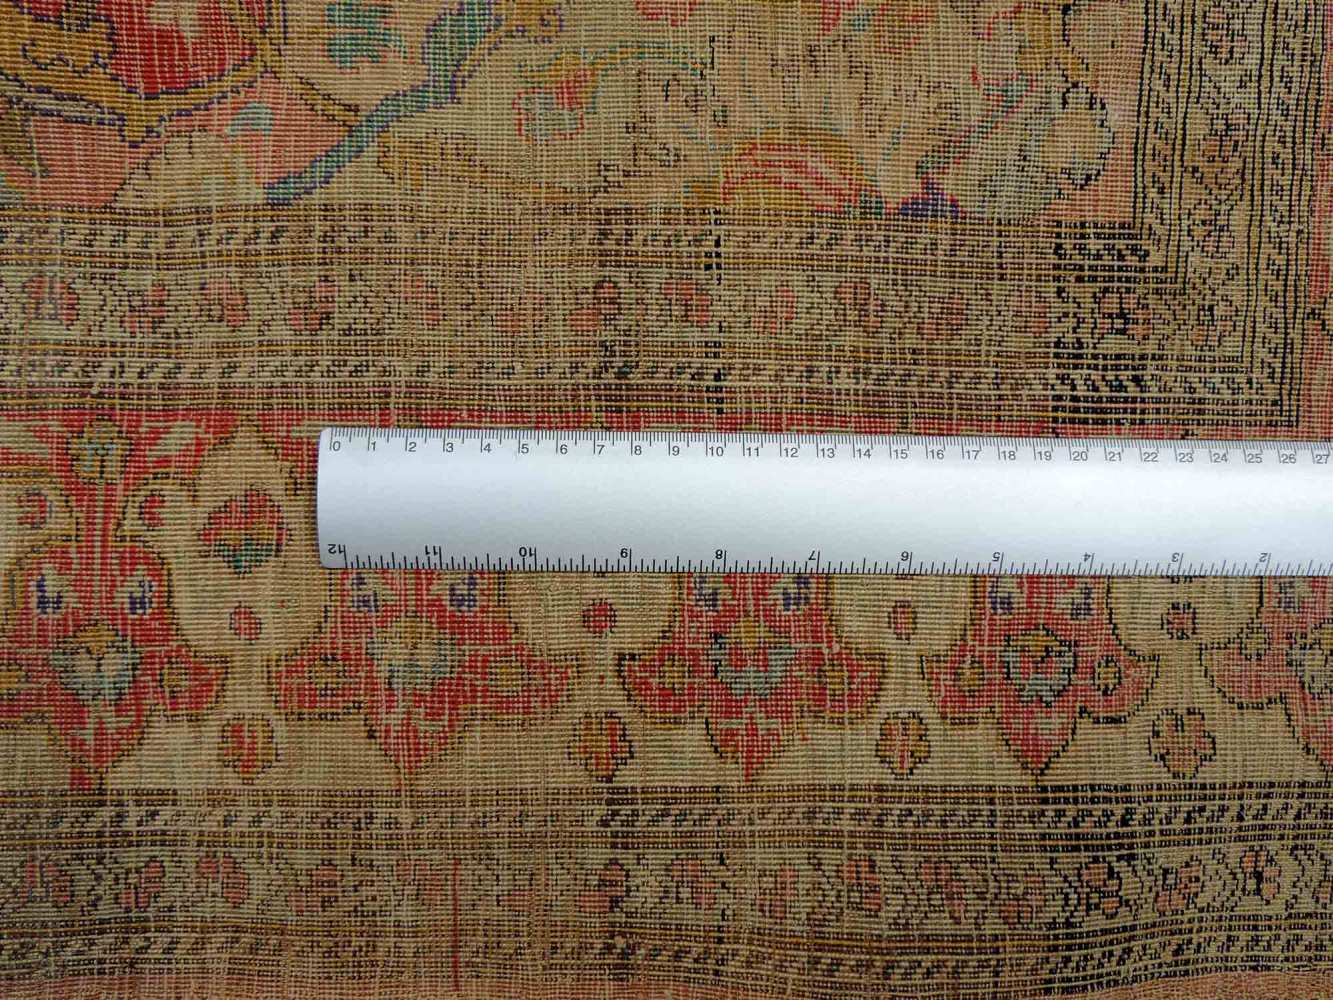 Safawiden Seidenteppich, Iran. Antik, 17. Jahrhundert. 162 cm x 116 cm. Handgeknüpft in Persien. - Image 6 of 6